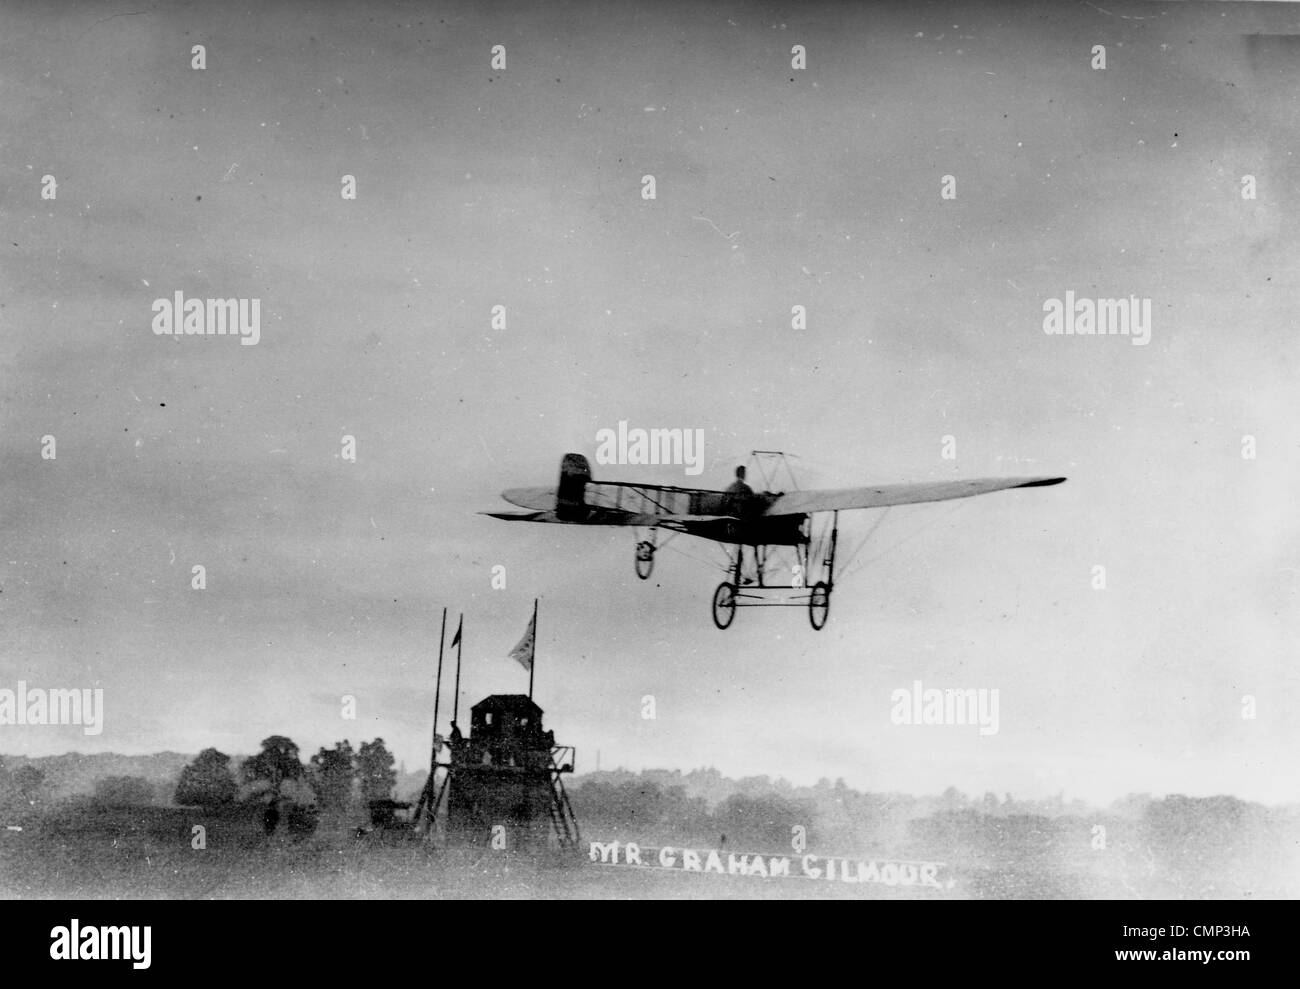 Midland-Aero-Club, Dunstall Park, Wolverhampton, 1910. Graham Gilmour fliegen seine "Bleriot" Eindecker in der Nähe von "Control Tower" Stockfoto